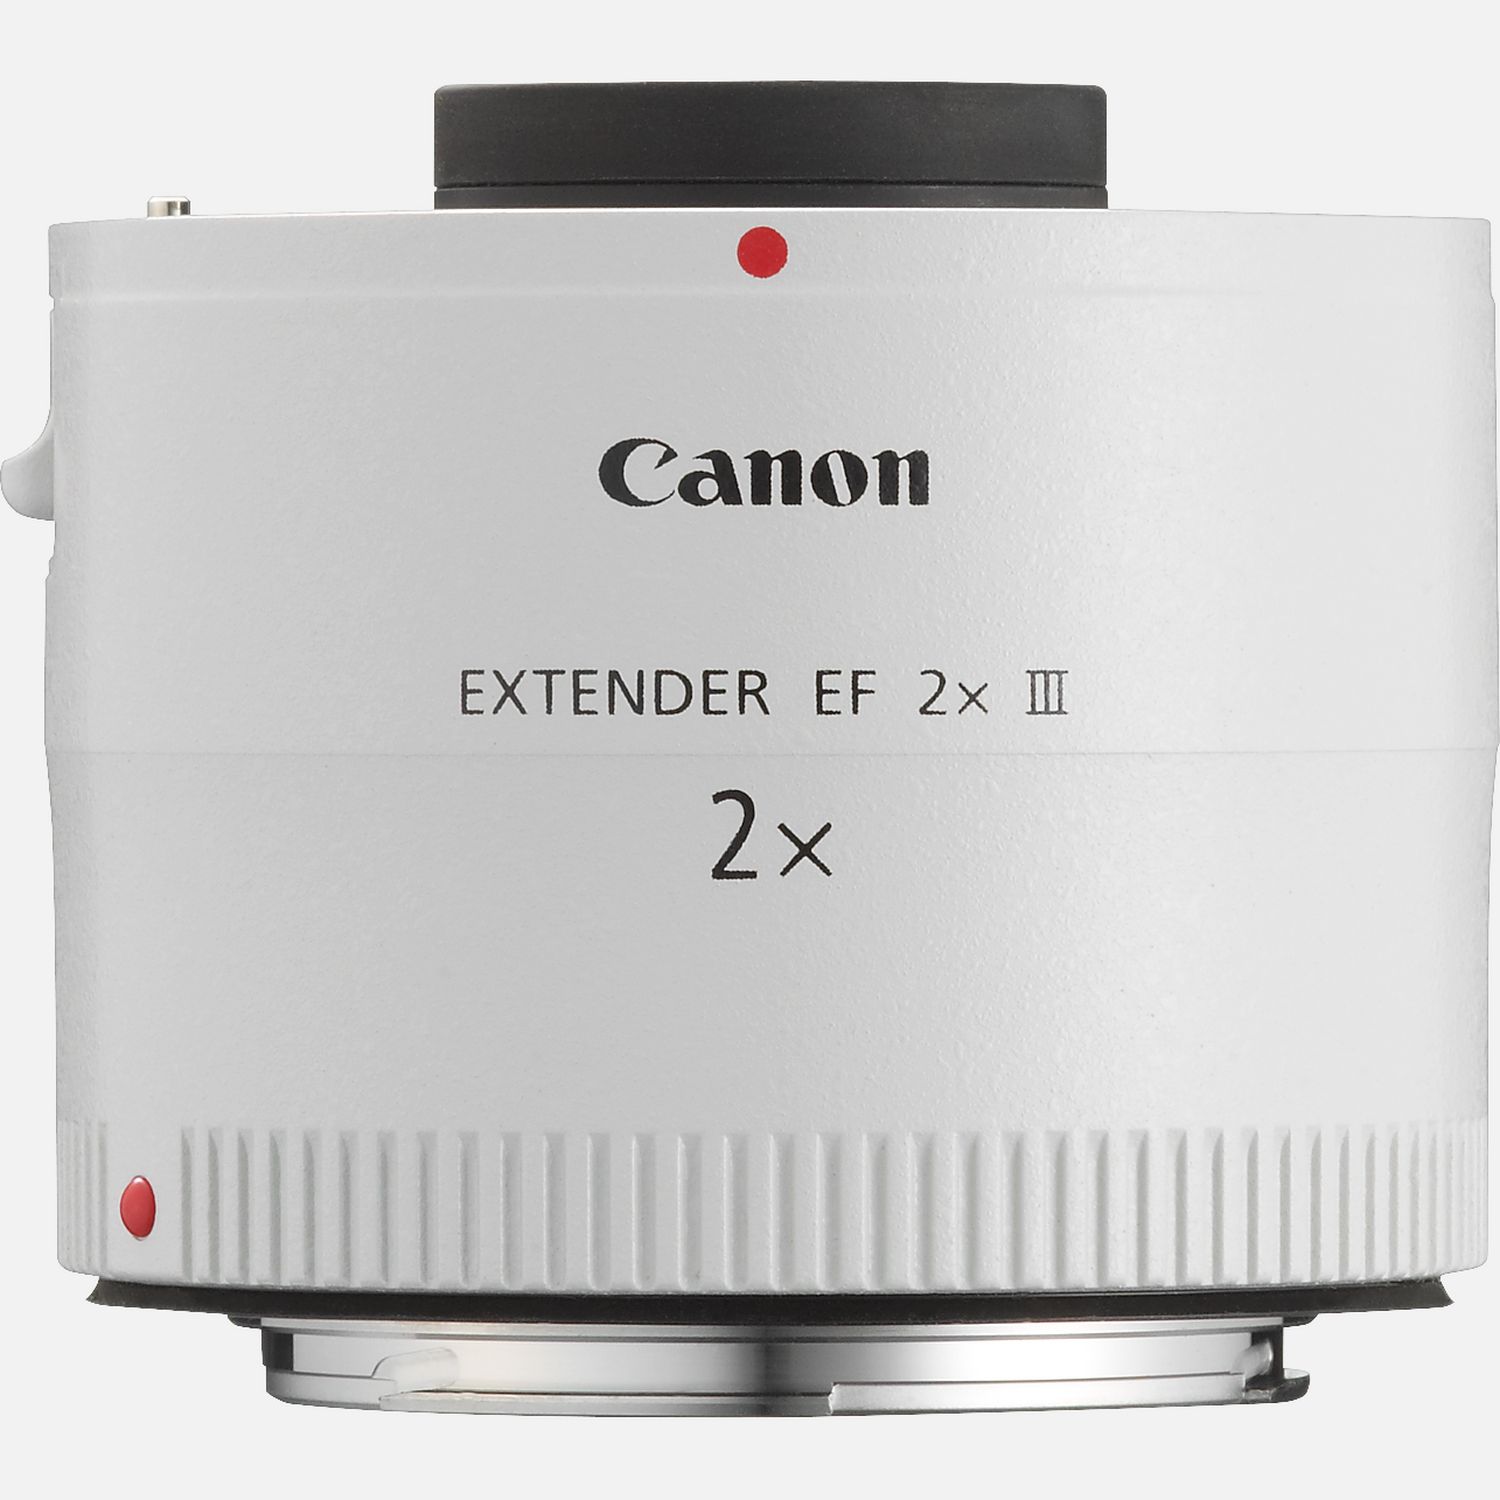 Kup Canon Extender EF 2x III